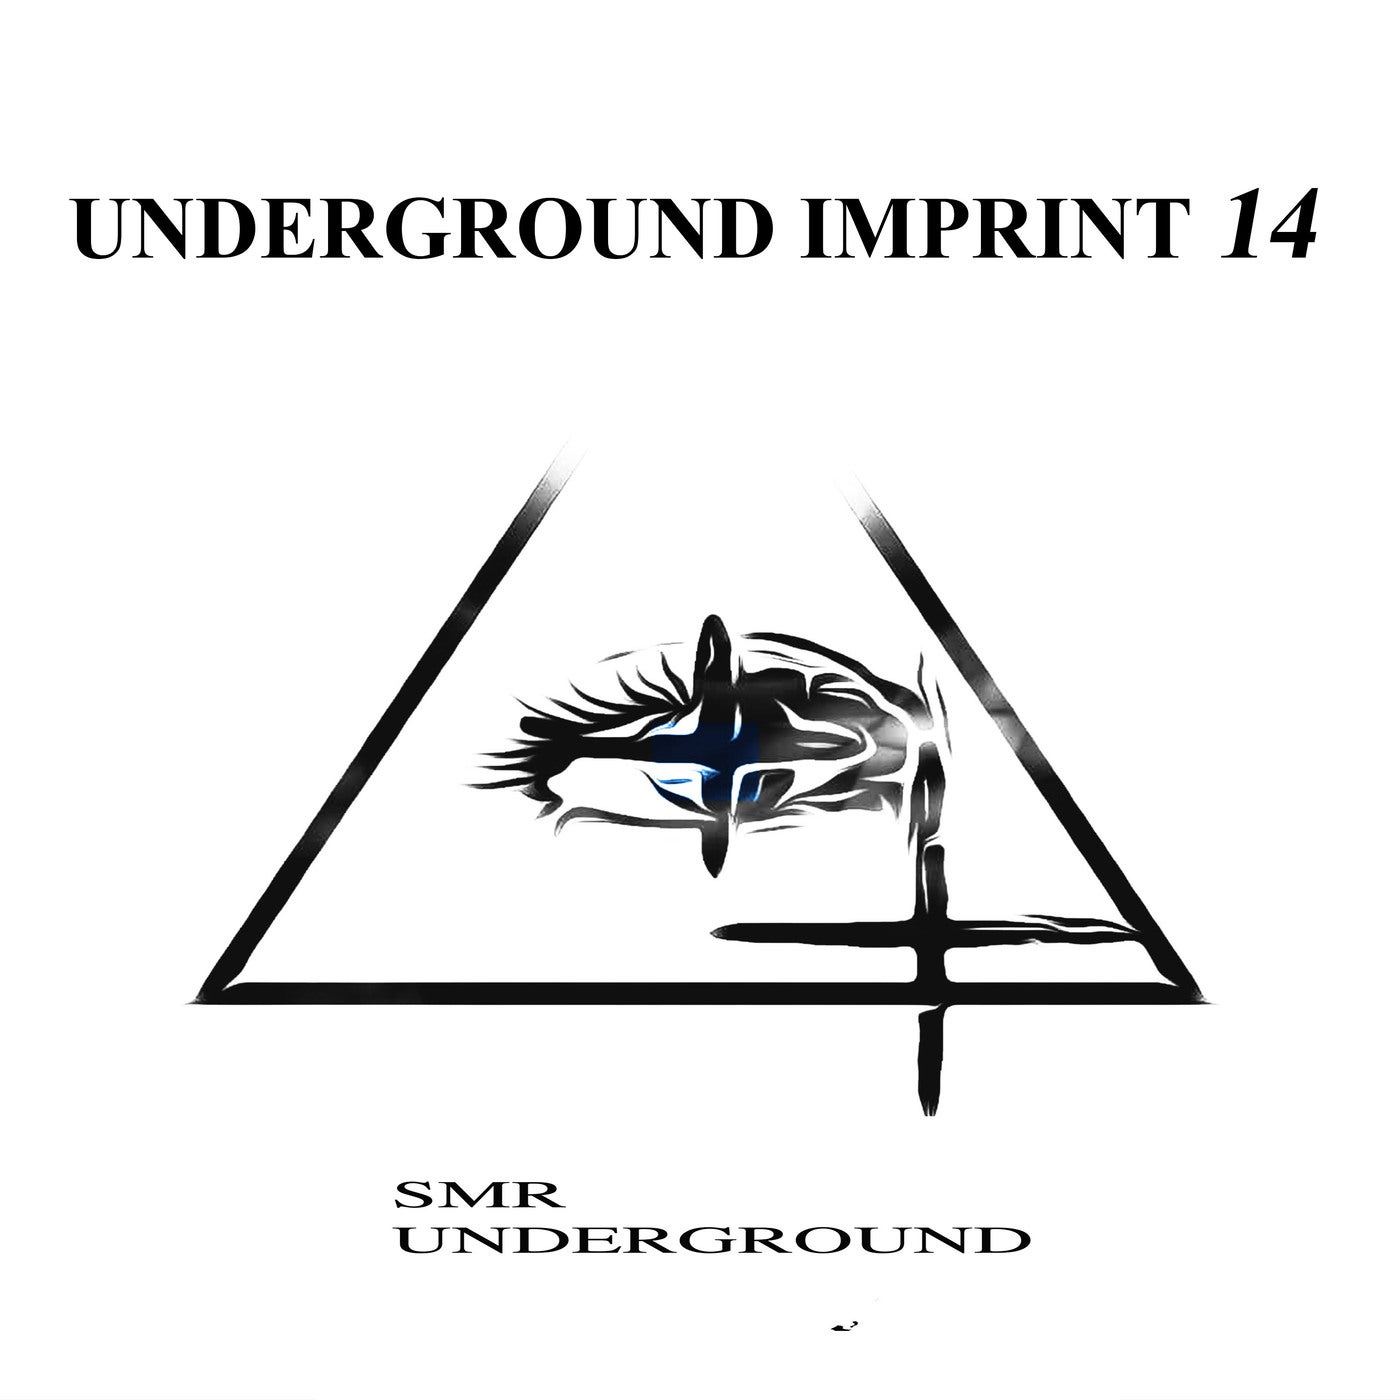 UndergrounD Imprint 14